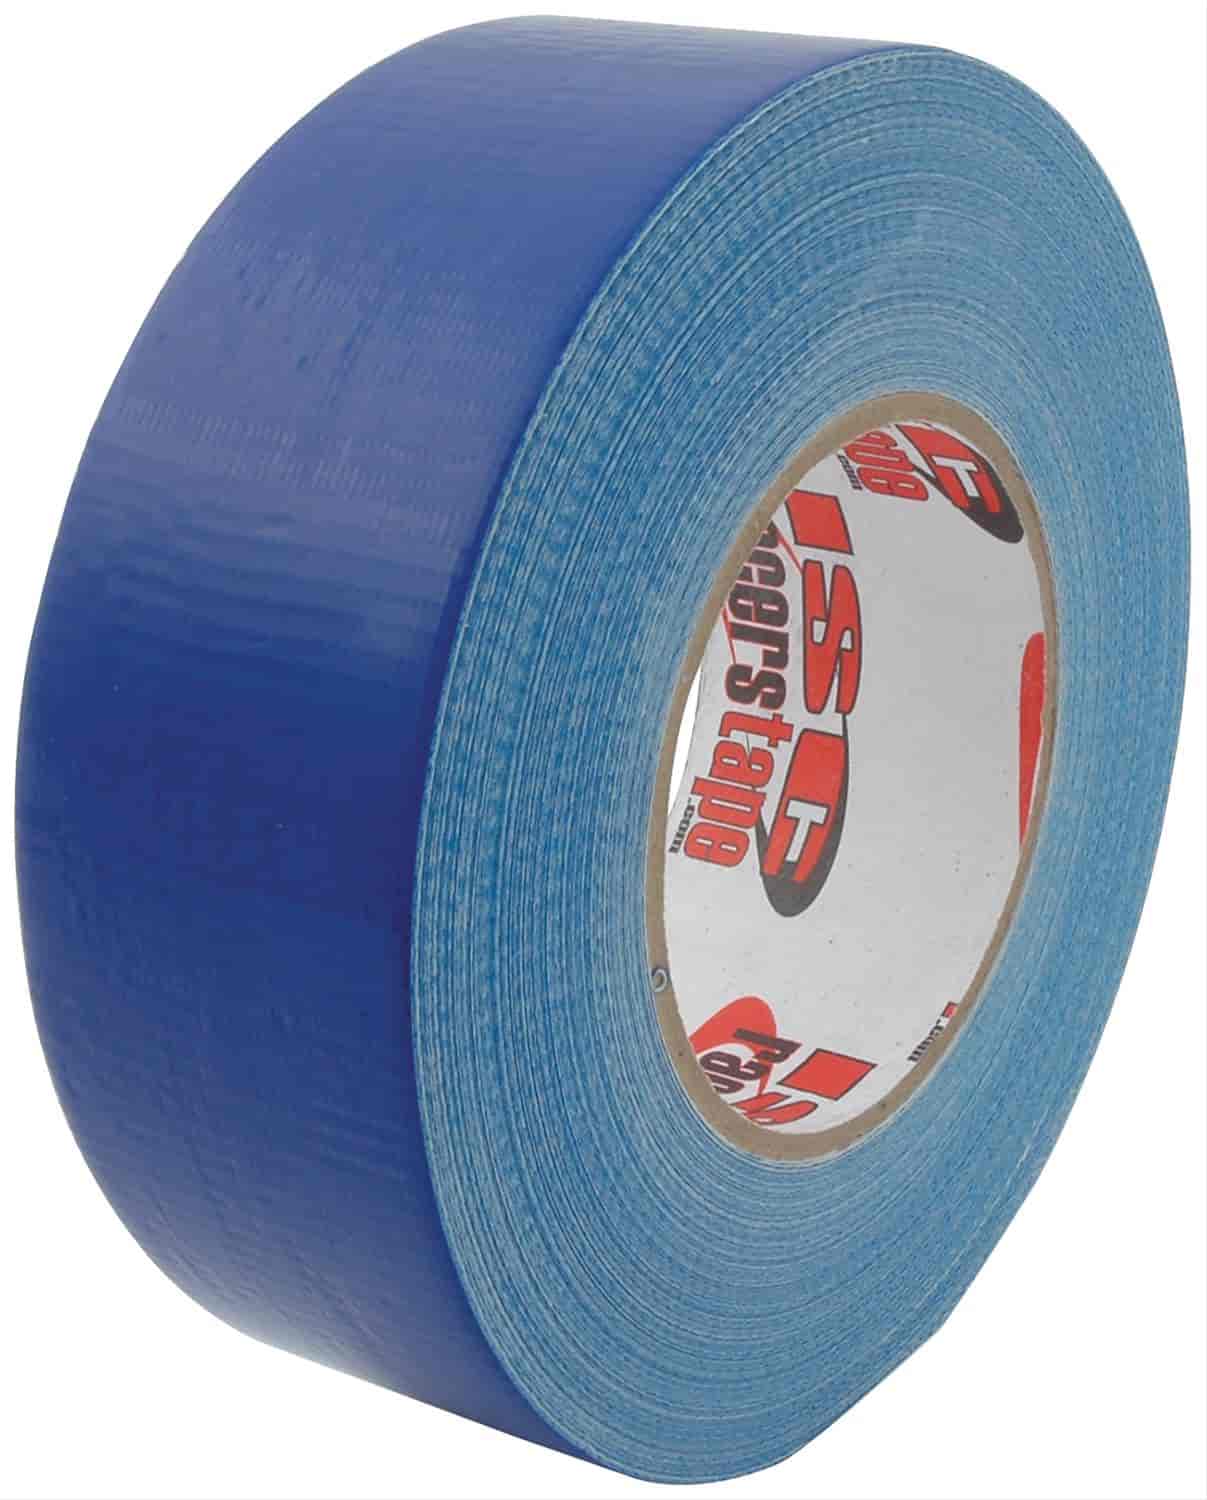 2" x 180" Racer"s Tape Blue